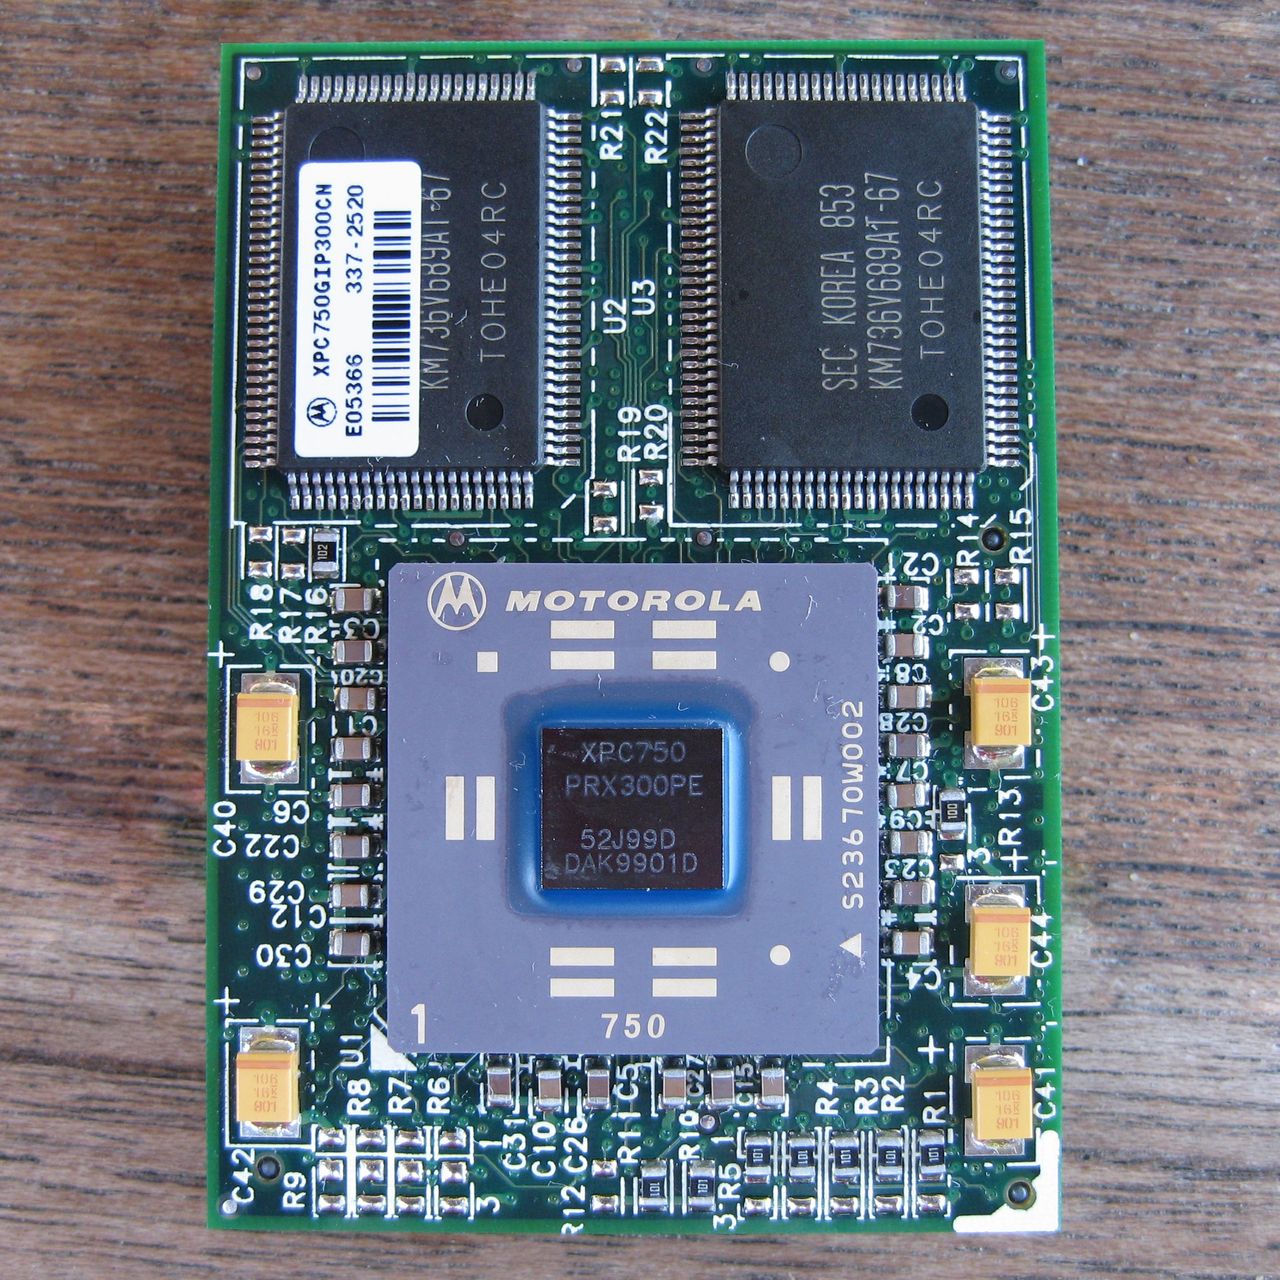 Procesor PowerPC 750 wyprodukowany przez Motorolę /fot. Wikimedia Commons